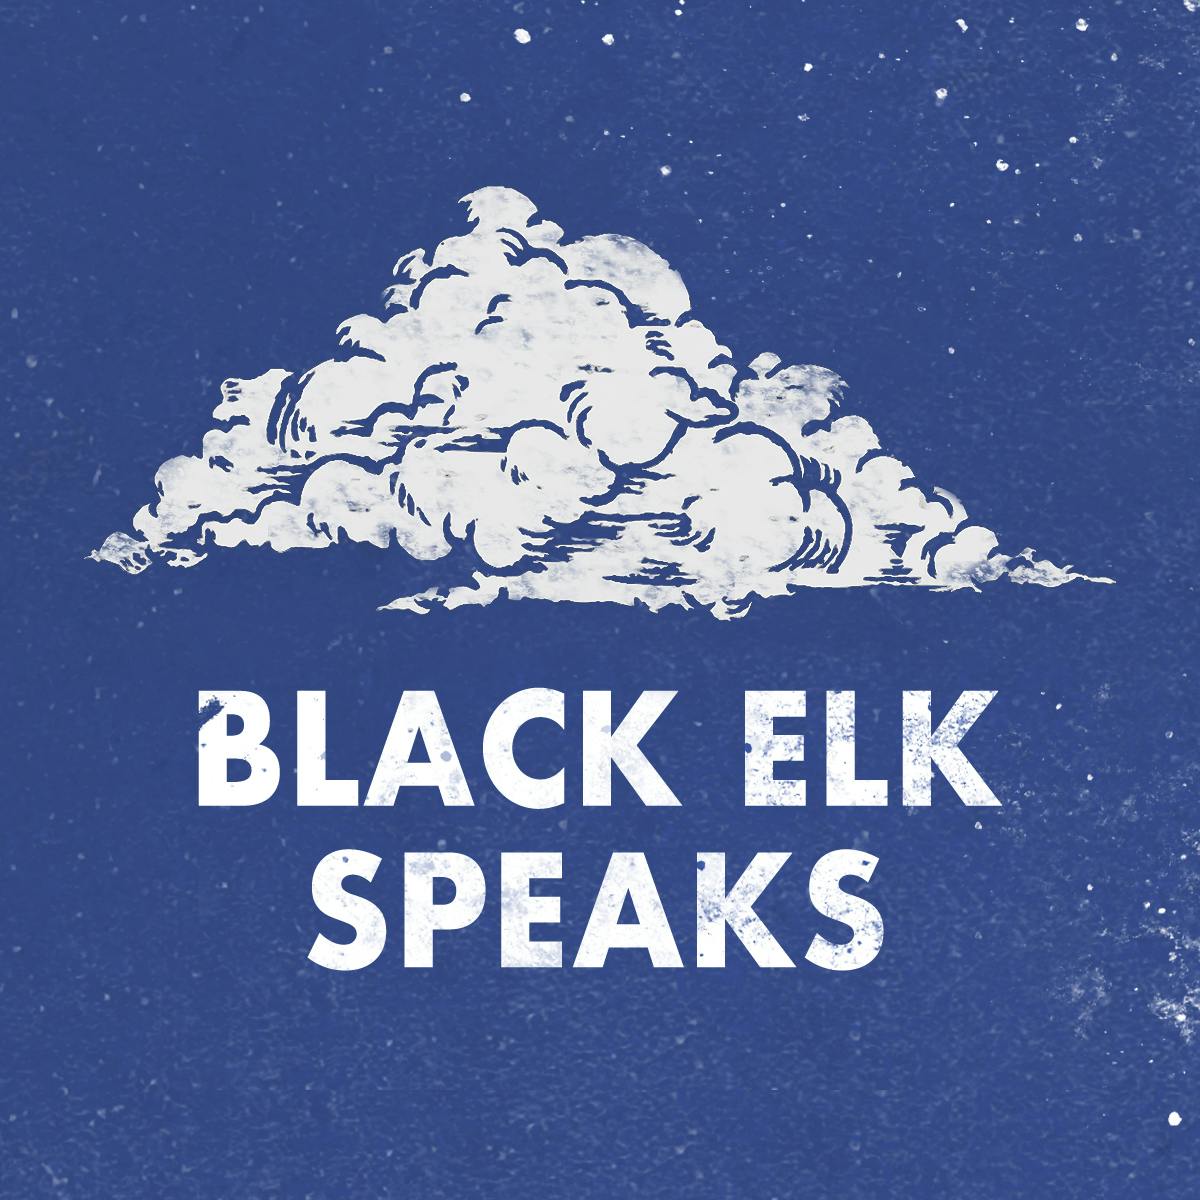 Black Elk Speaks